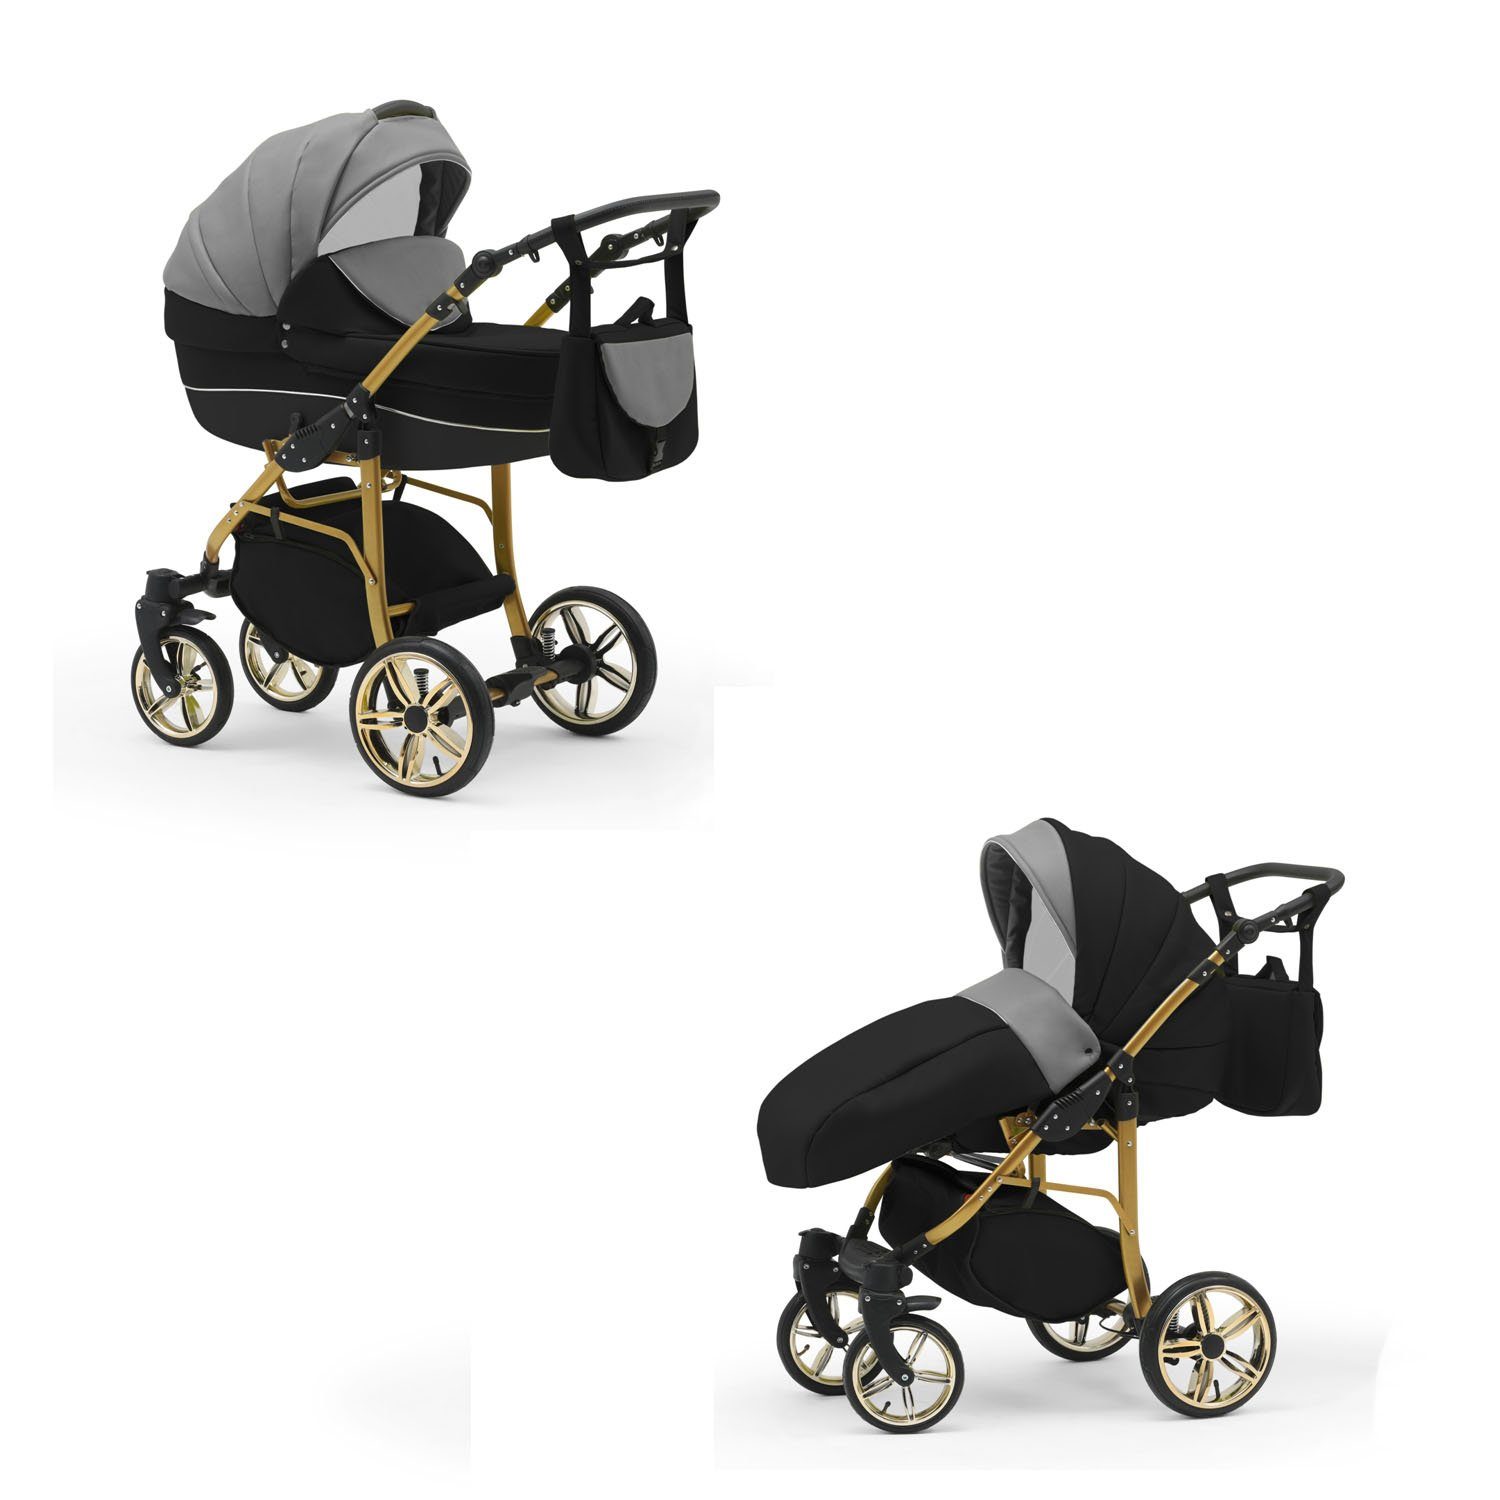 Kinderwagen-Set Gold babies-on-wheels 13 1 in Cosmo in Grau-Schwarz-Schwarz - 46 Farben Teile - Kombi-Kinderwagen 2